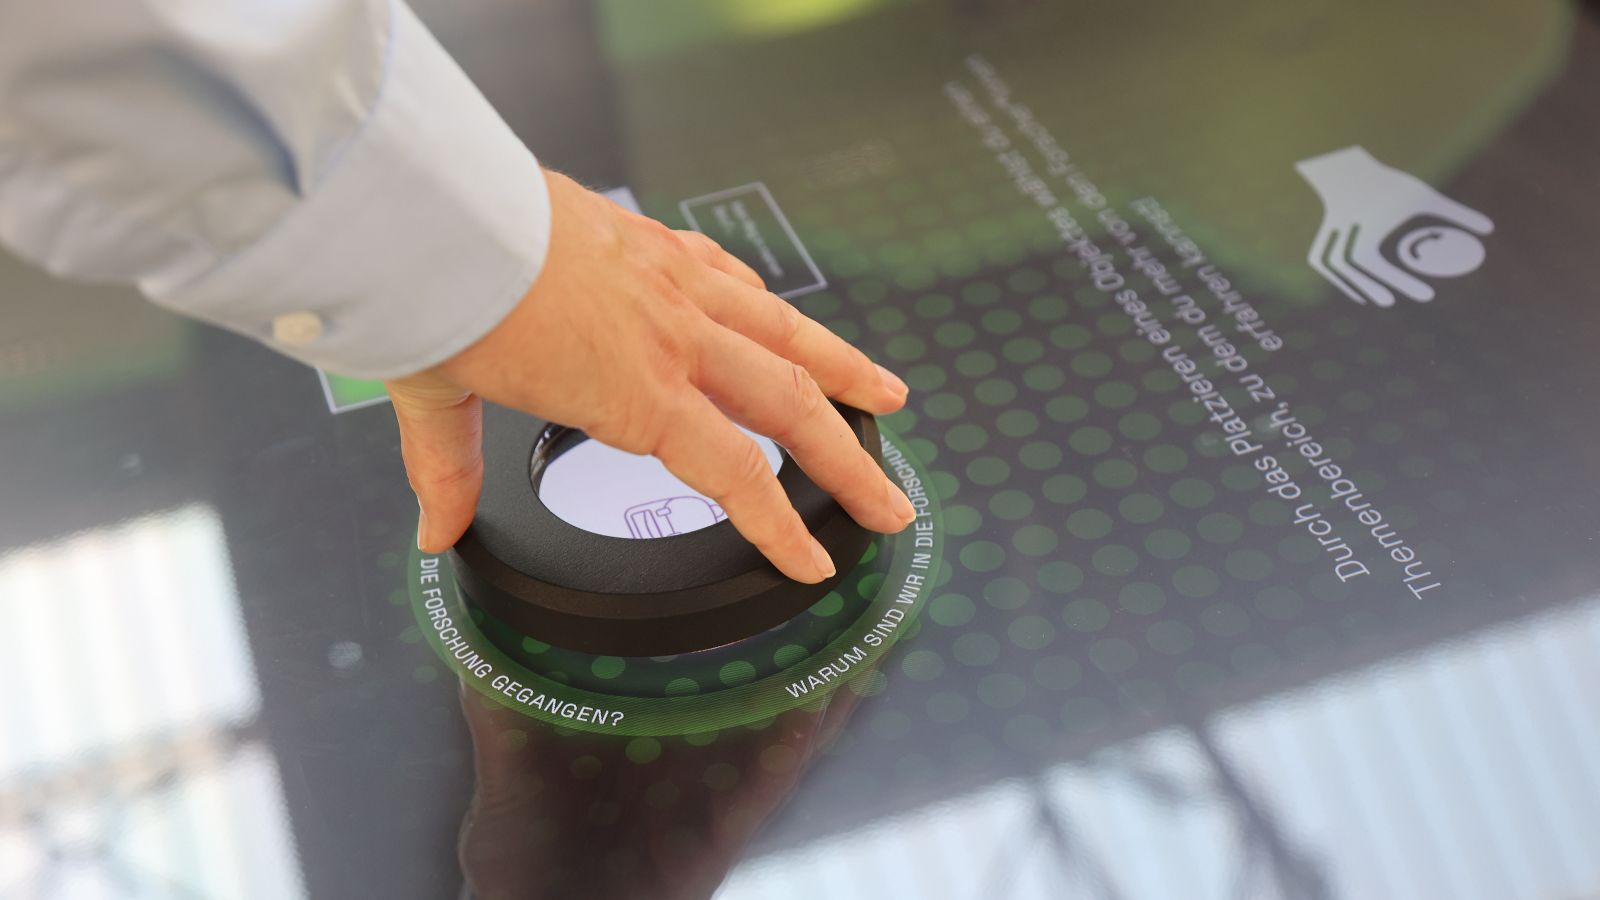 Das Bild zeigt eine Hand, die ein interaktives Element über einen mit Touchscreen ausgestatteten Tisch führt.